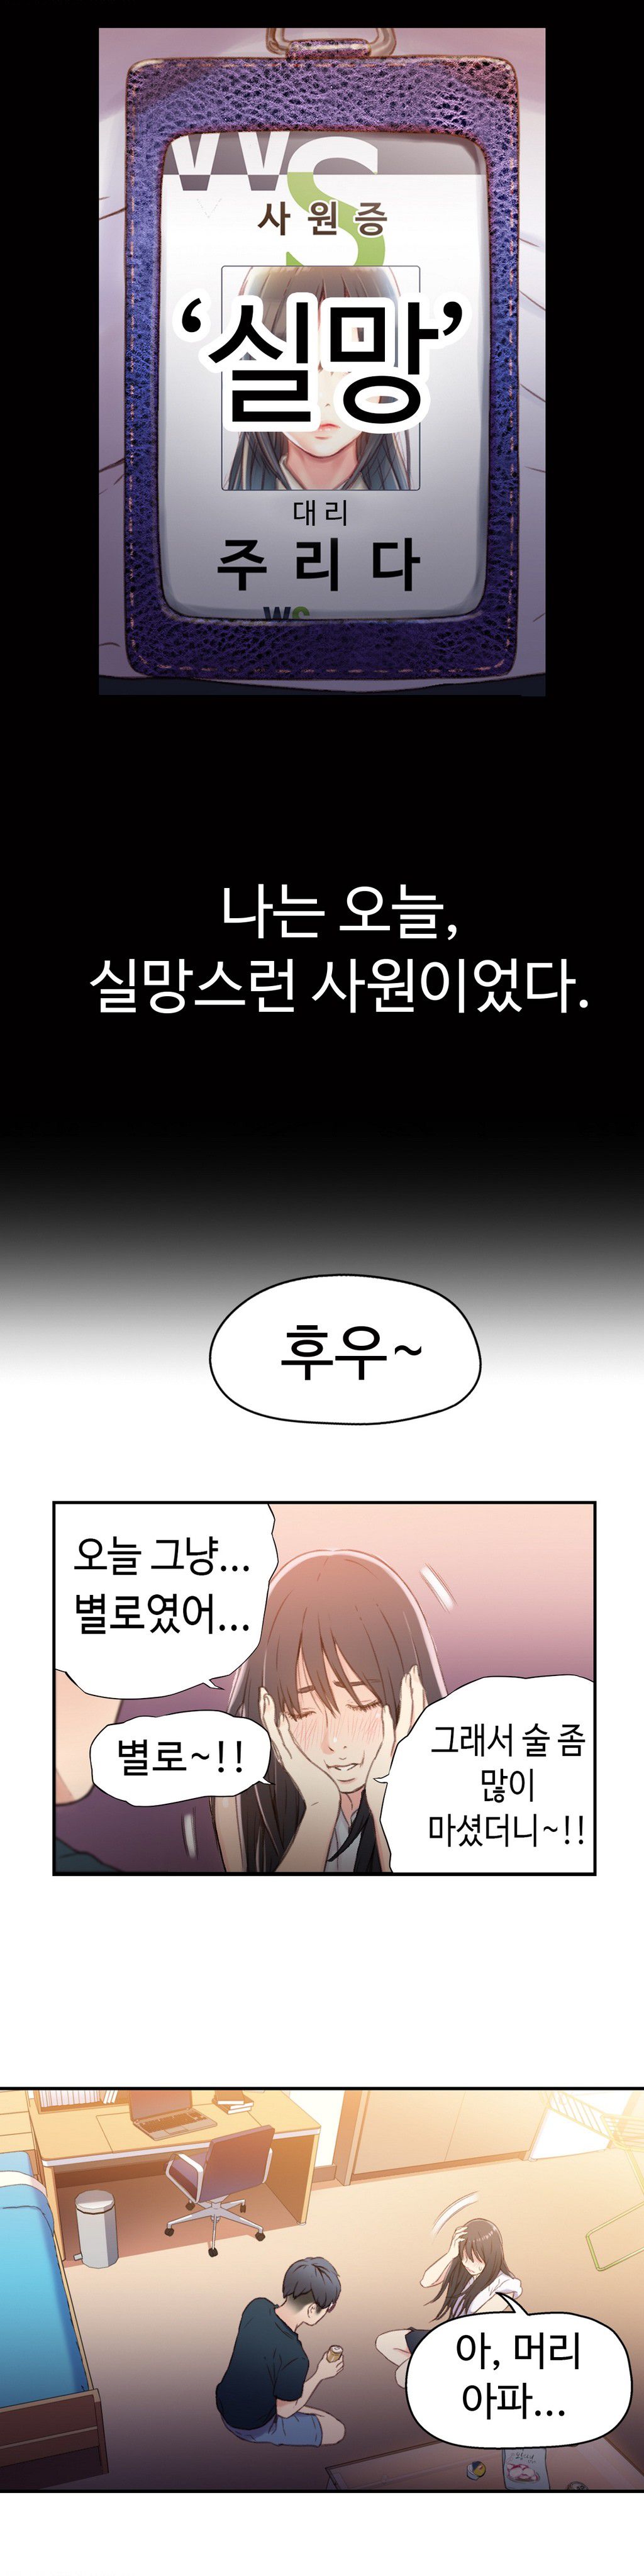 Sweet Guy Chapter 18 [Korean] (Full Color) Lezhin Comics 2wonsik2 13